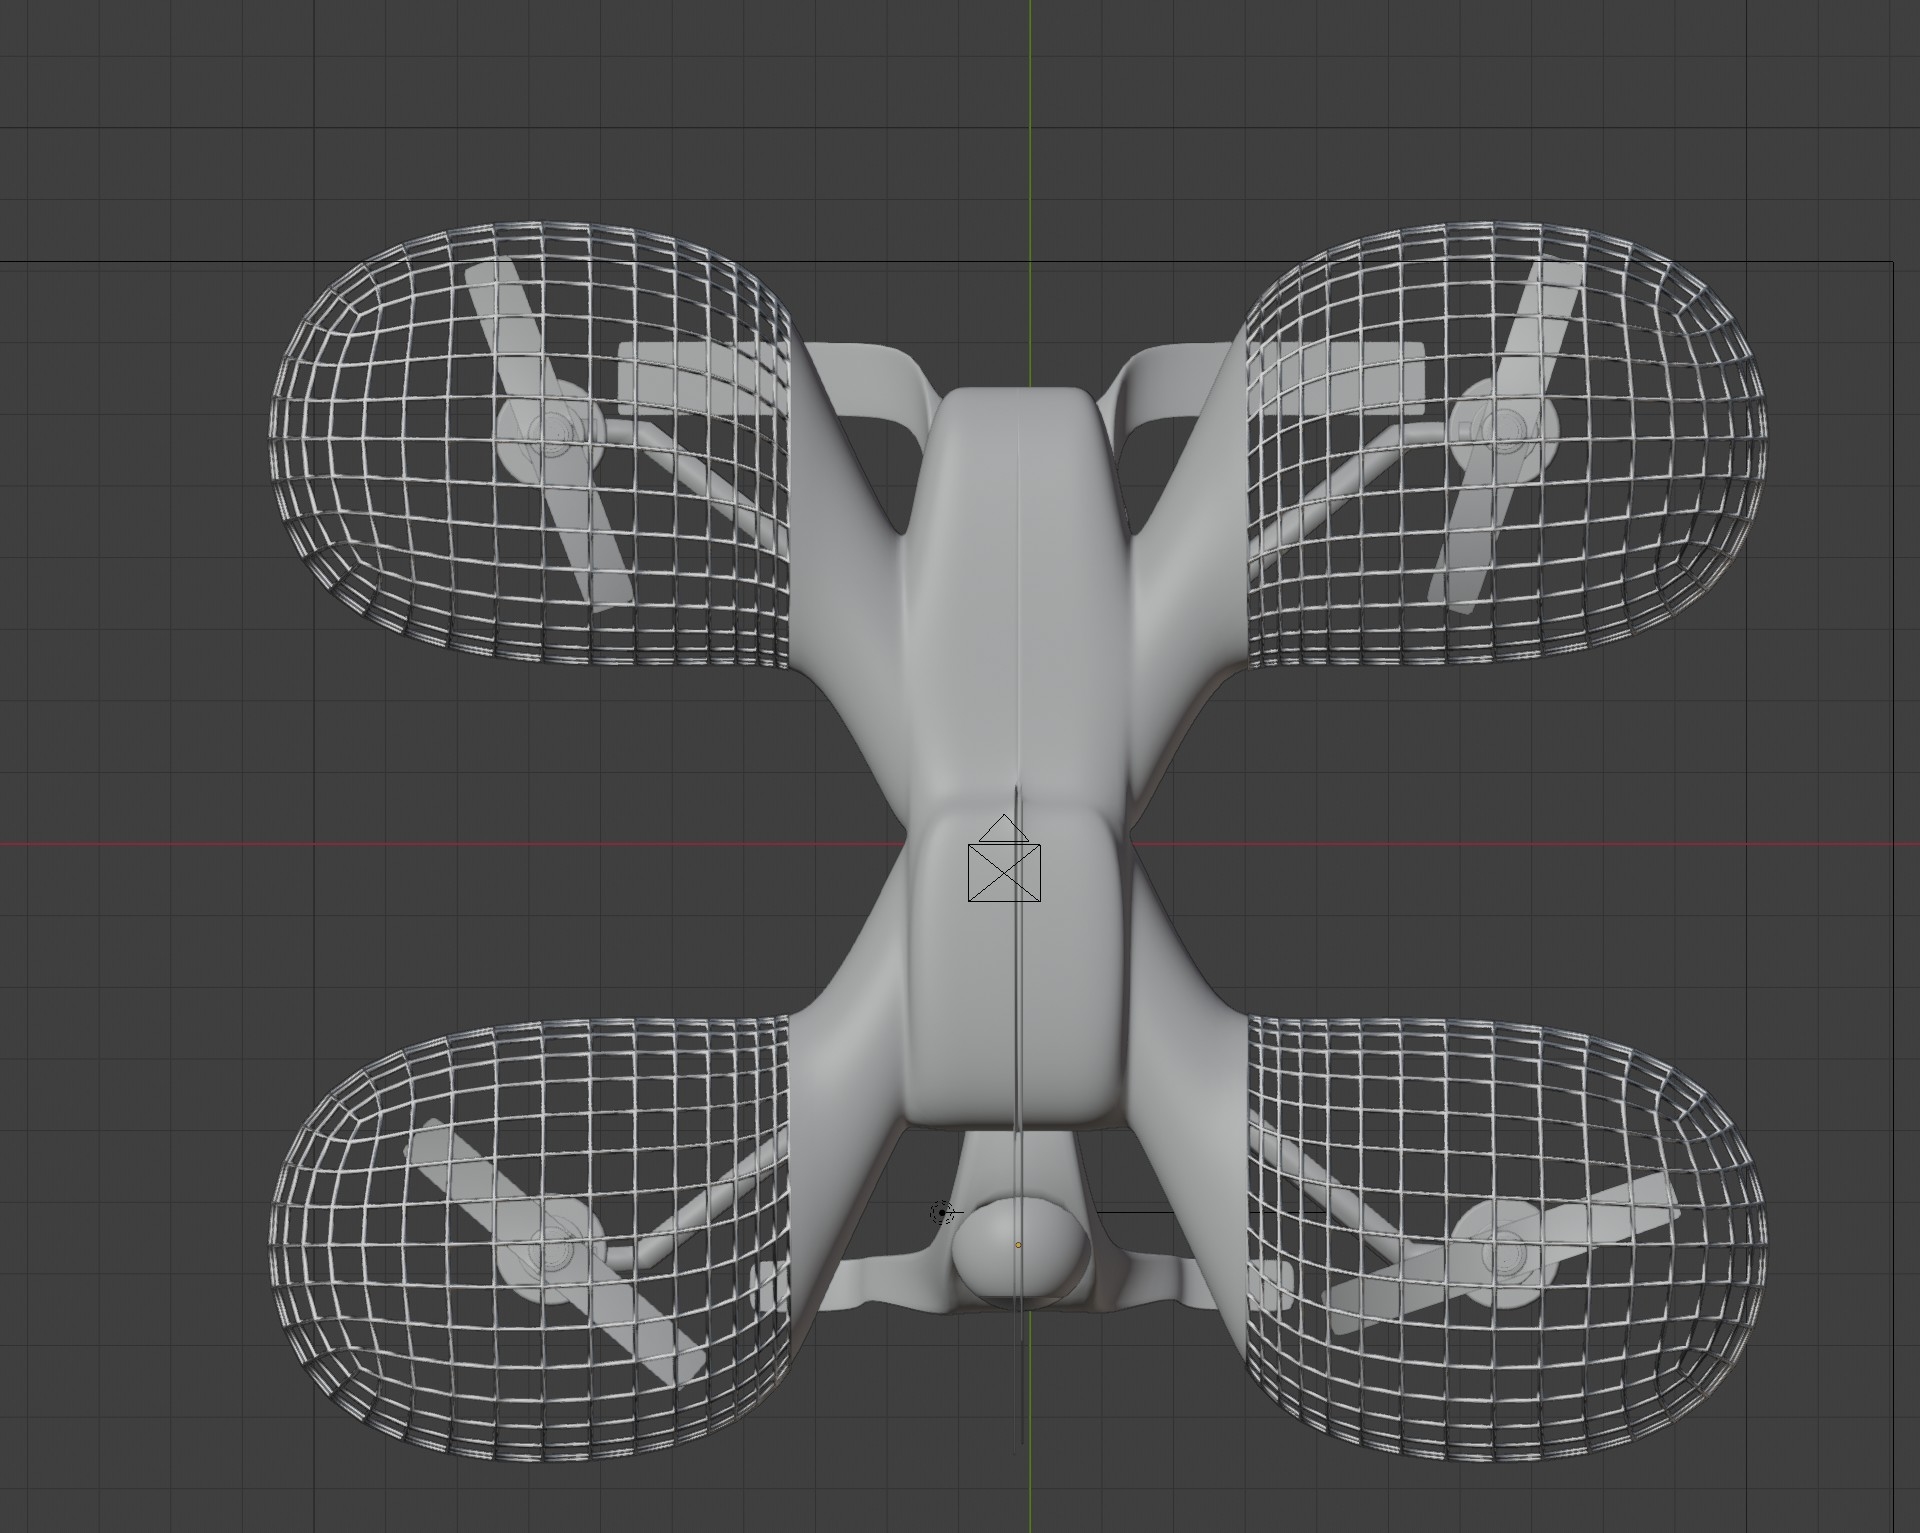 droen blender 3d objects free download